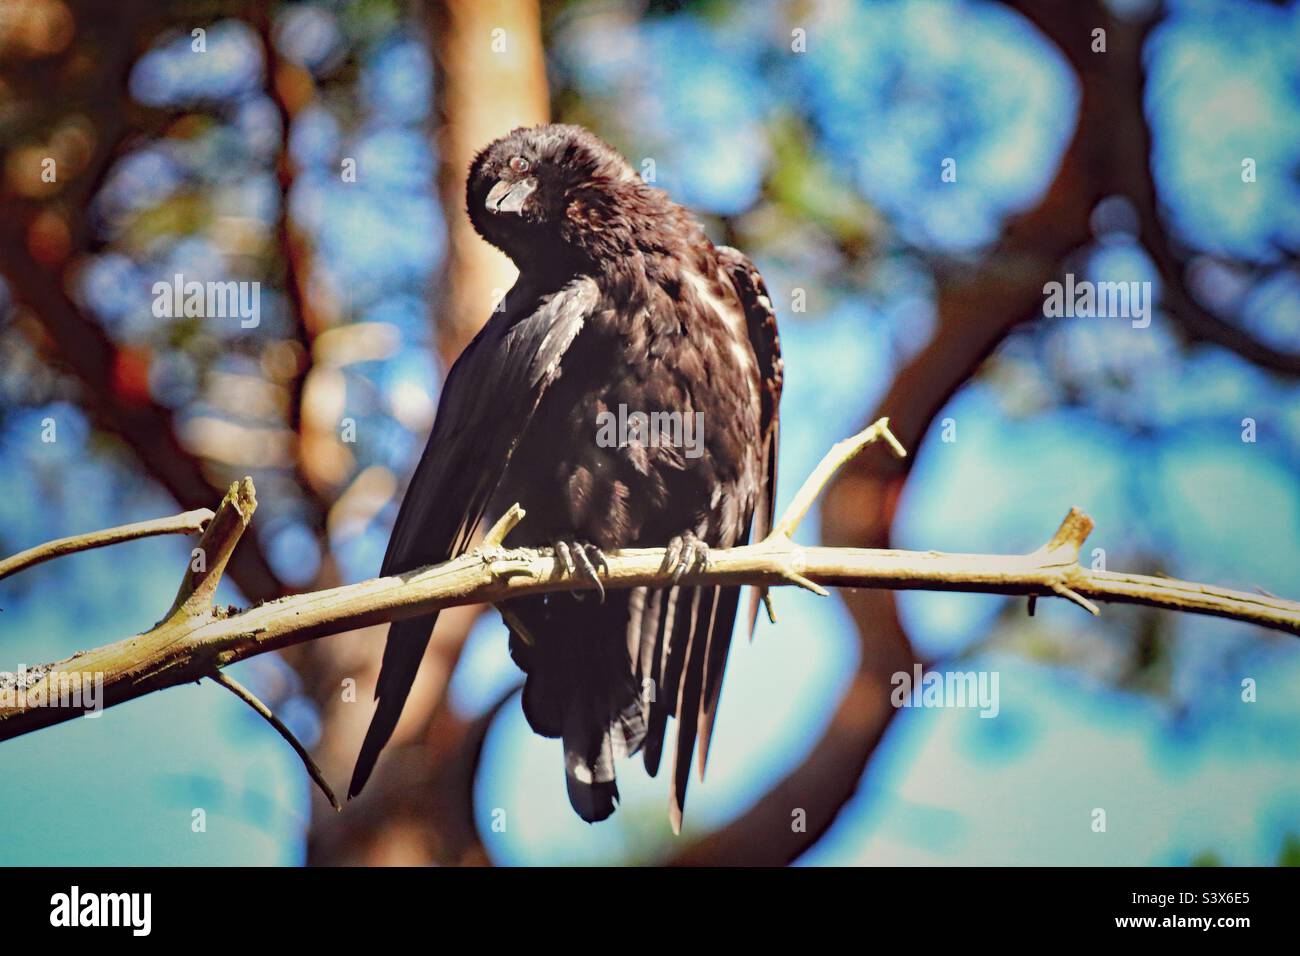 Un Crow qui profite du soleil. Cet oiseau est assis sur une branche et appréciant les rayons du soleil dans la vague de chaleur. C'est ce qui a été pris à Pine Woods à Formby. Banque D'Images